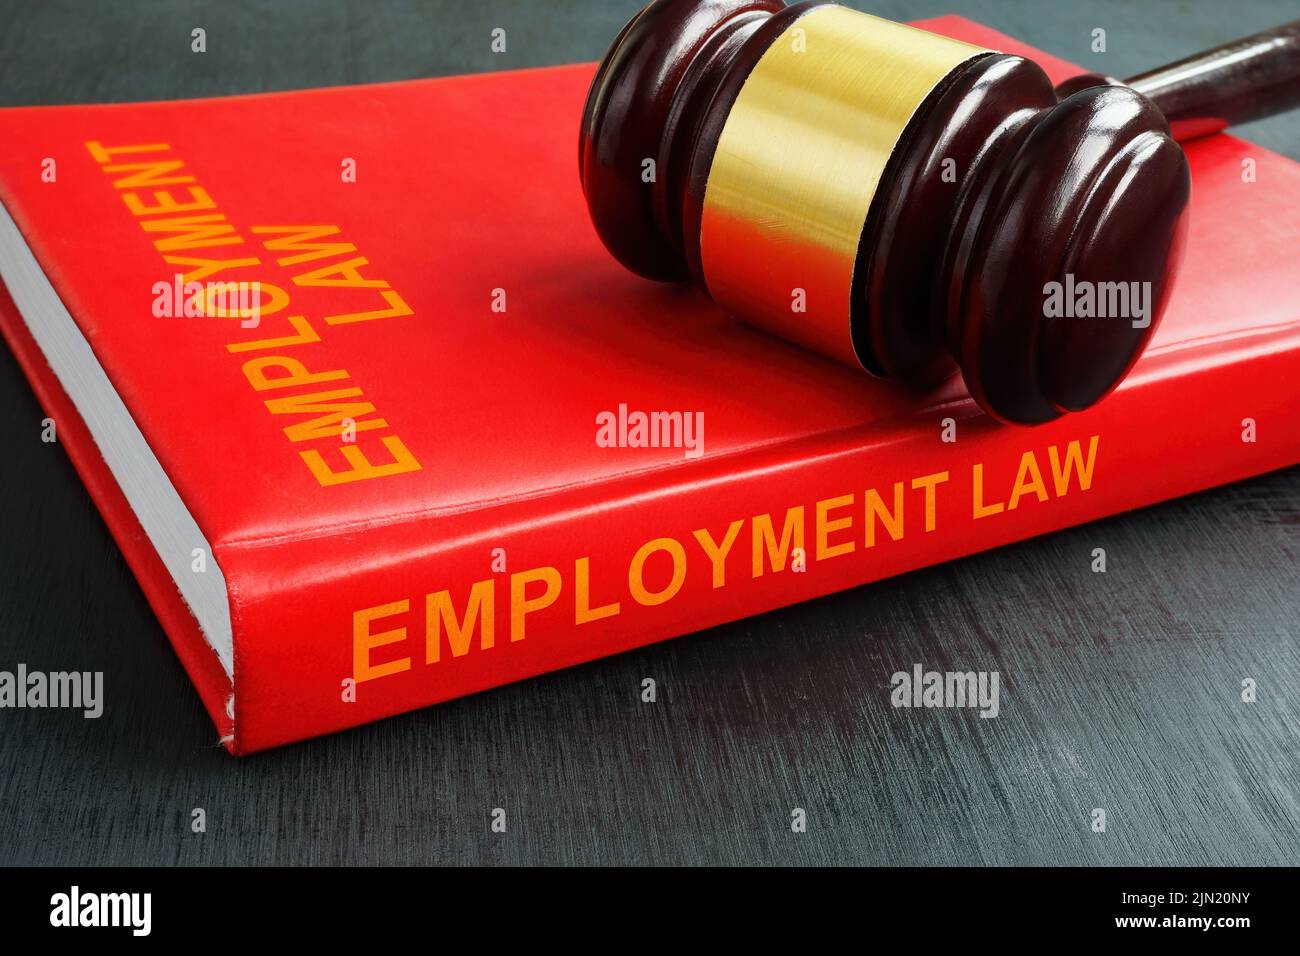 La ley del empleo del libro y el martillo en ella. Foto de stock